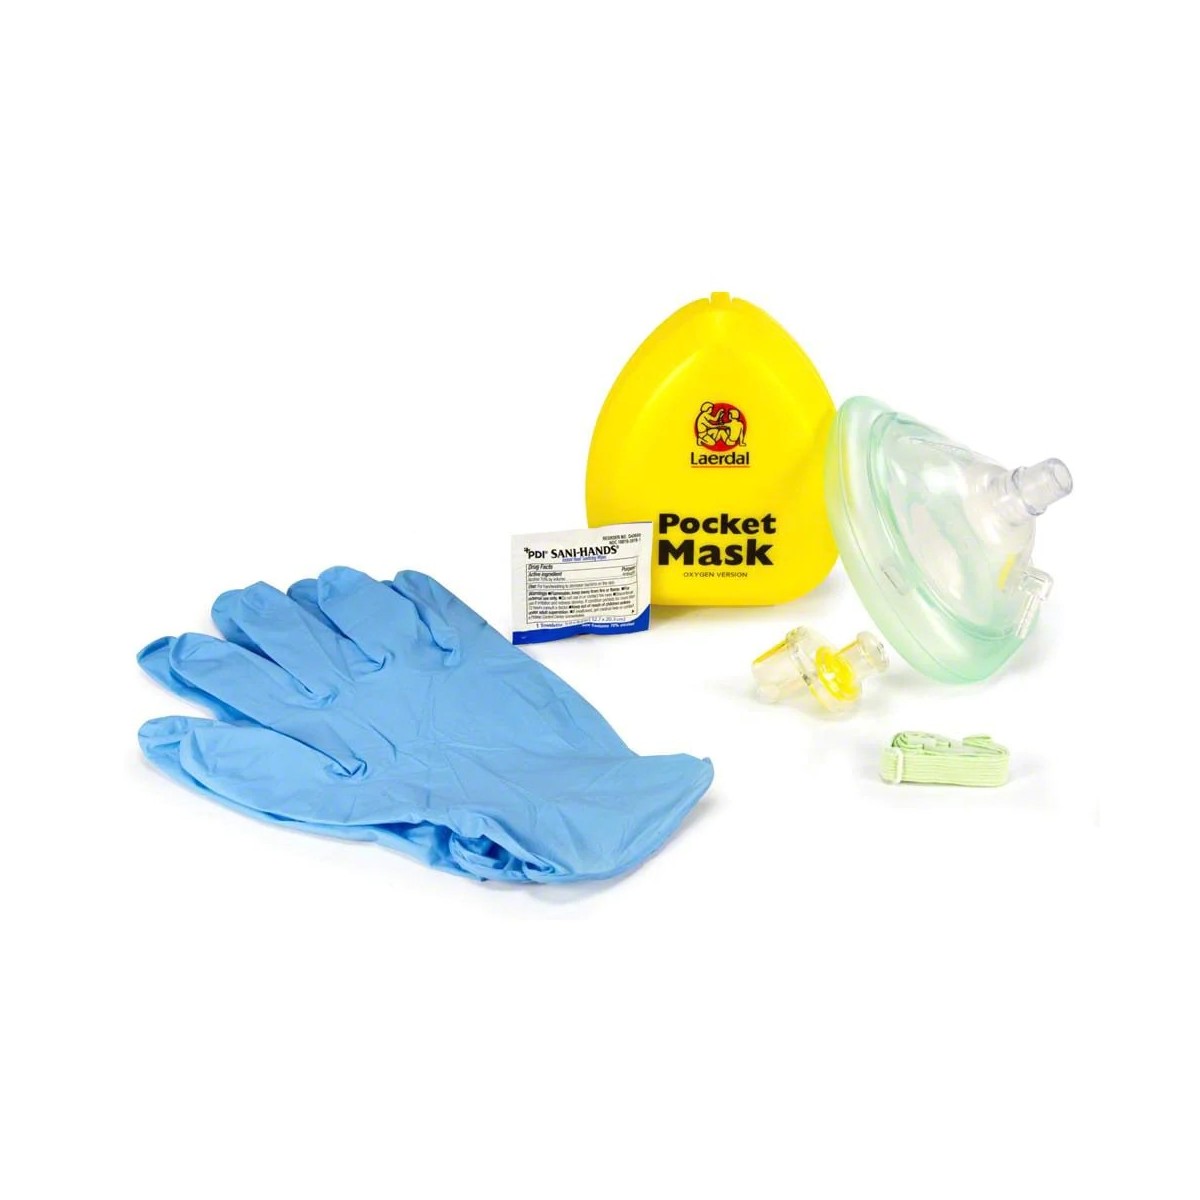 Laerdal Pocket Mask w Oxygen Inlet & Head Strap w Gloves in Yellow Hard Case